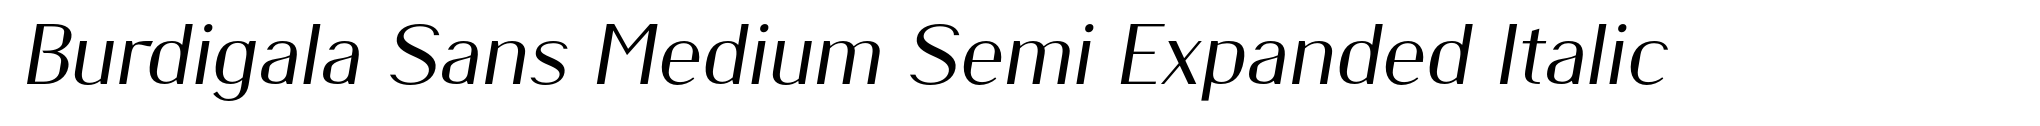 Burdigala Sans Medium Semi Expanded Italic image